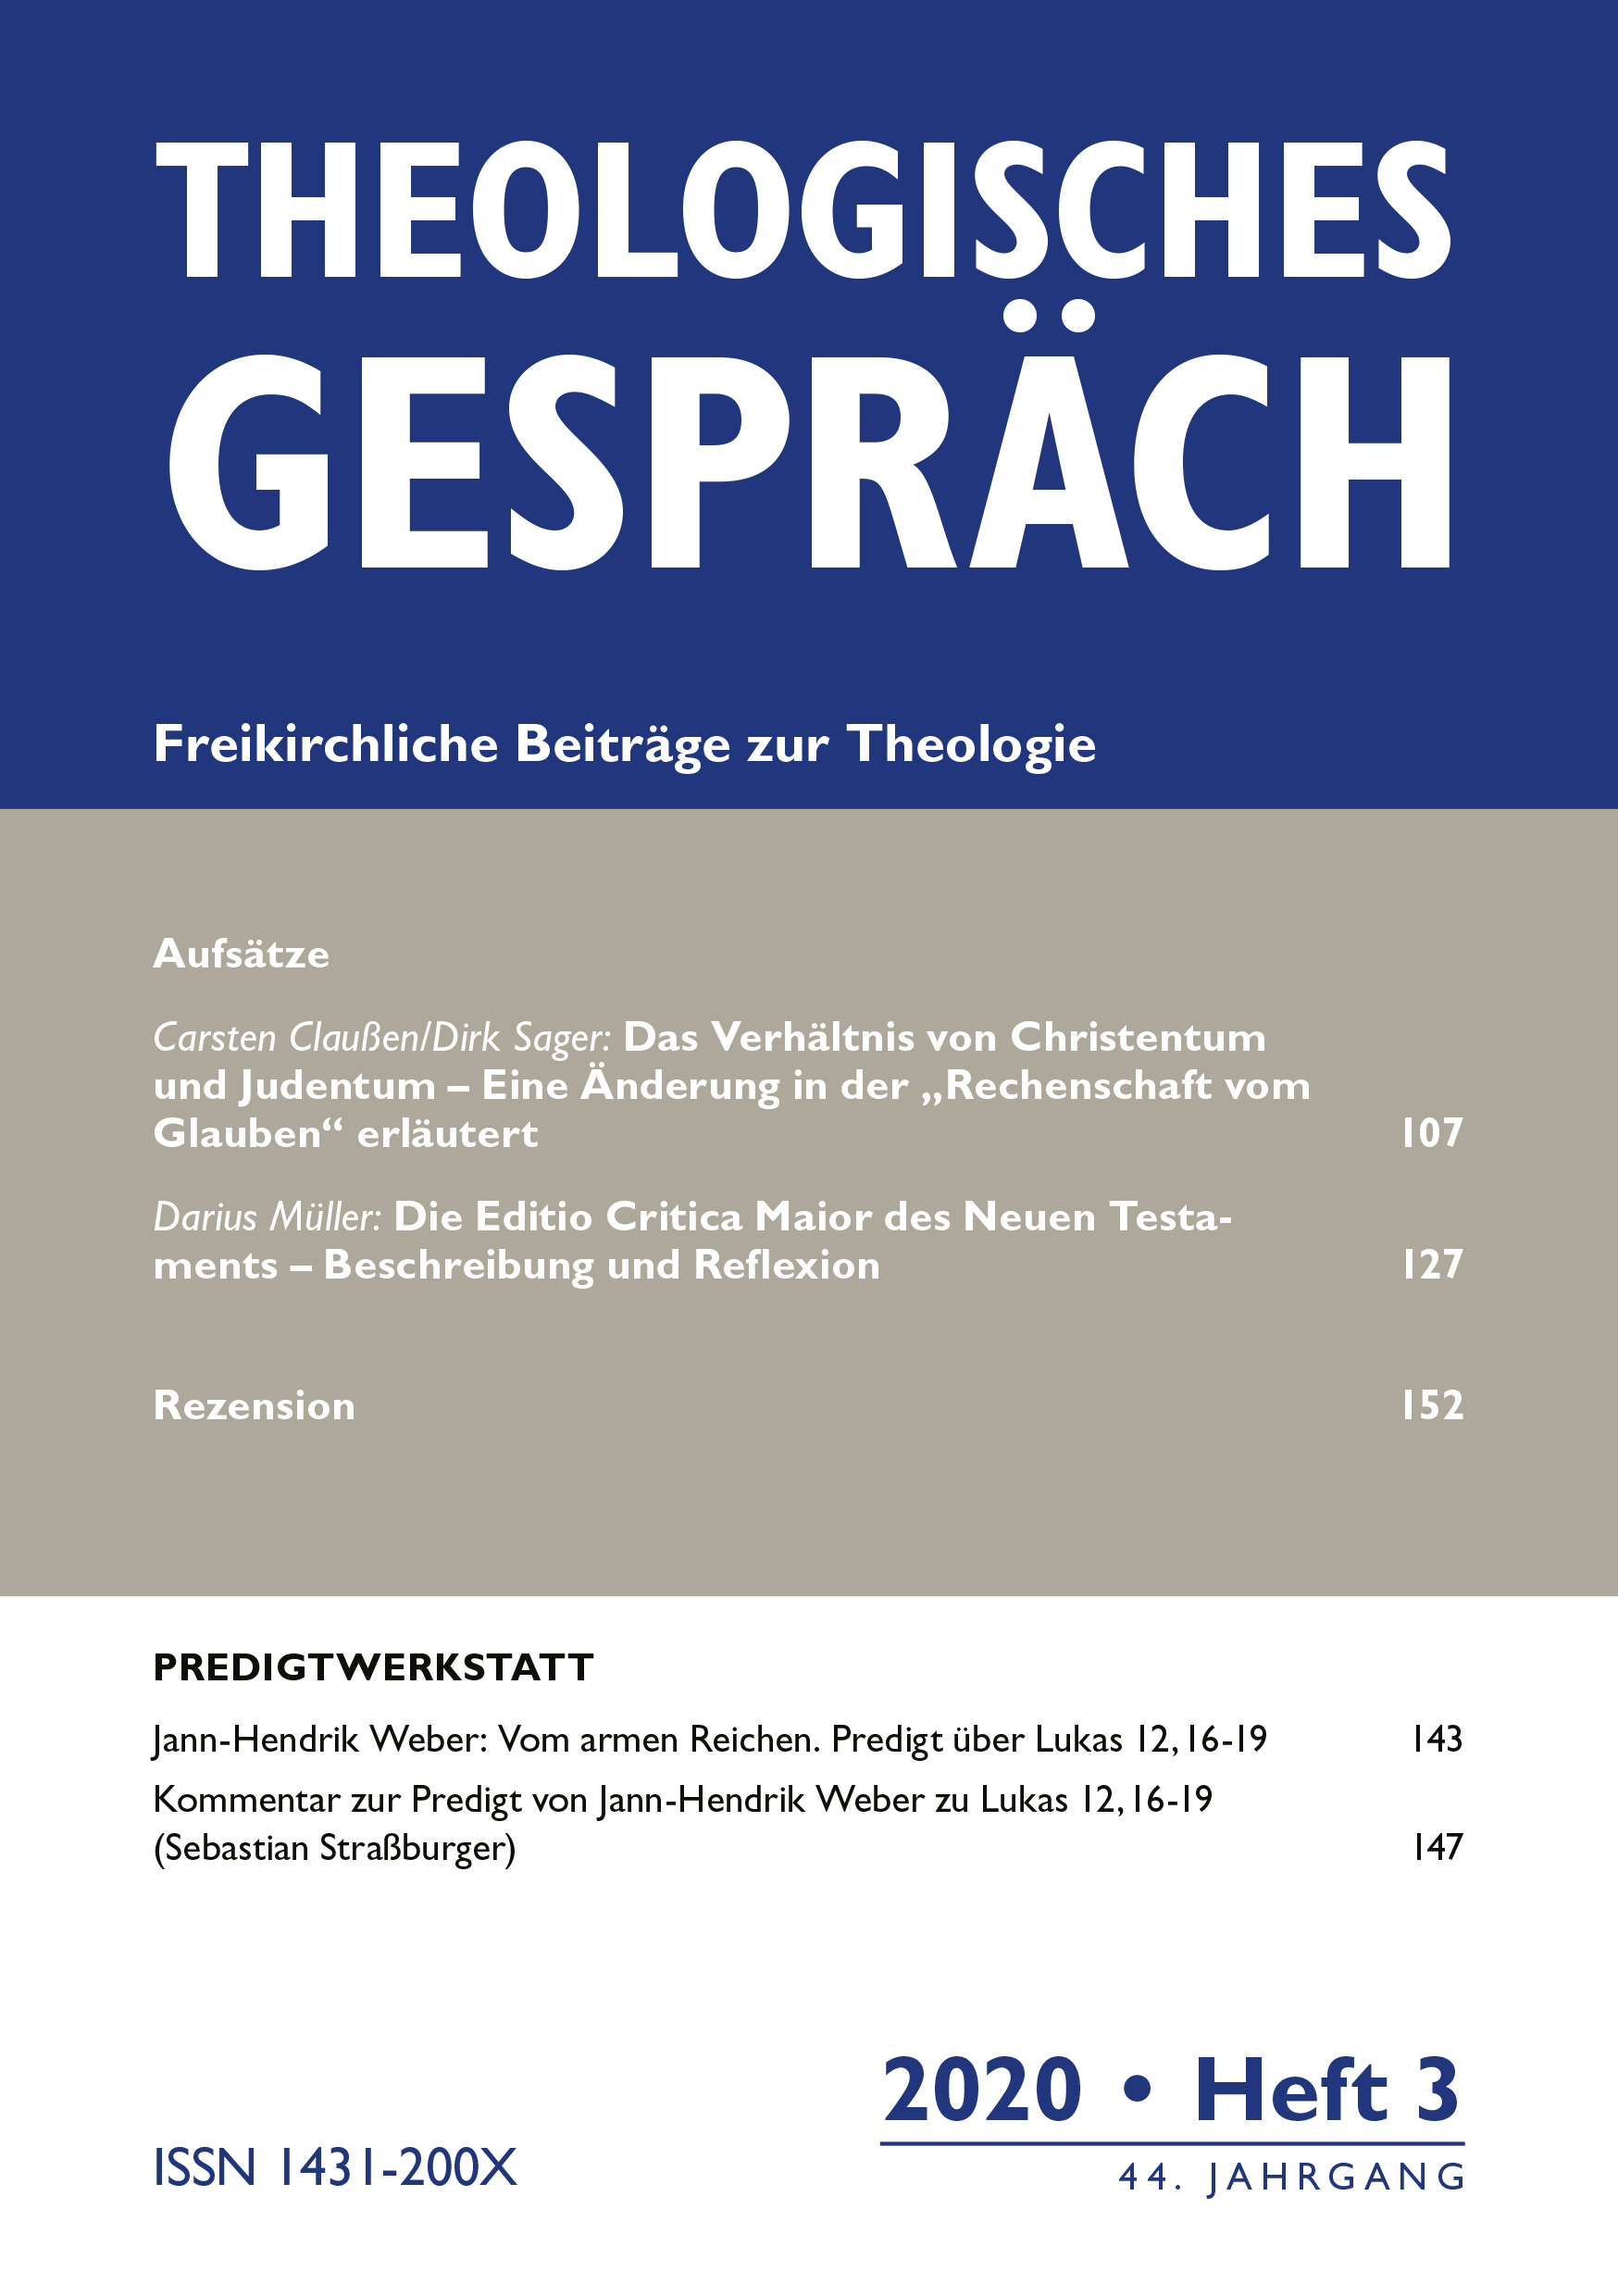 Theologisches Gespräch 03/2020